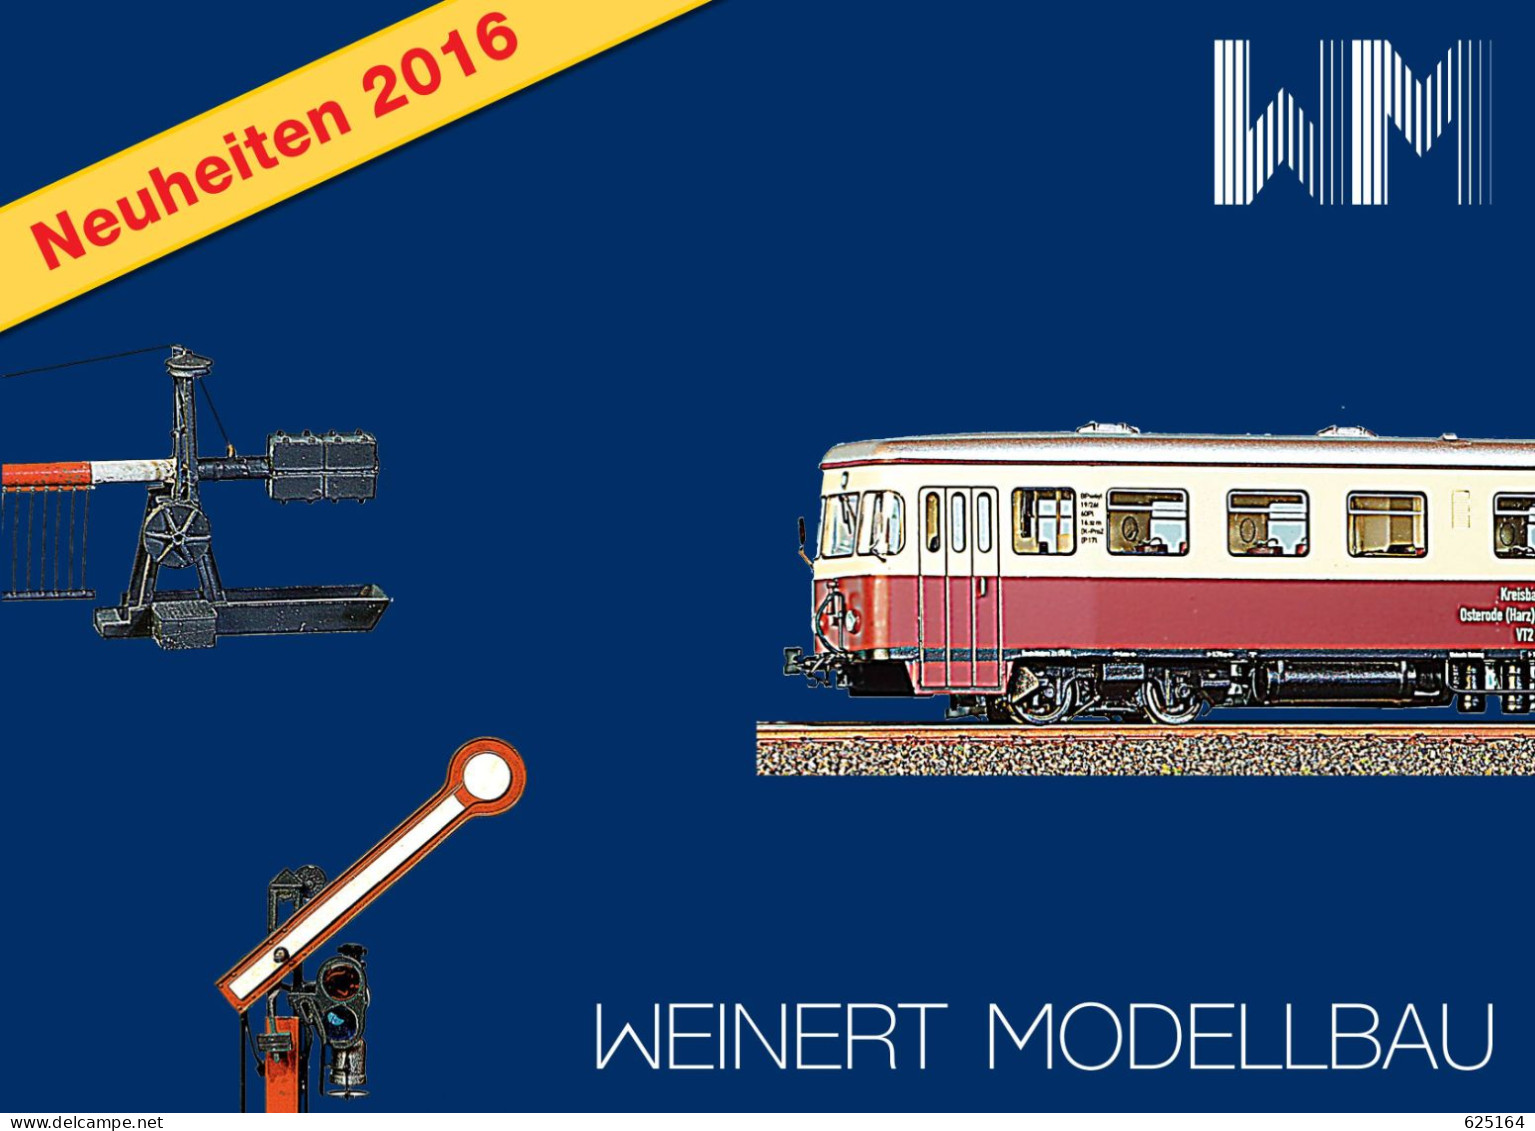 Catalogue WEINERT MODELLBAU 2016 Neuheiten Messing Bausatz Spur HO Z N TT O 1 - German